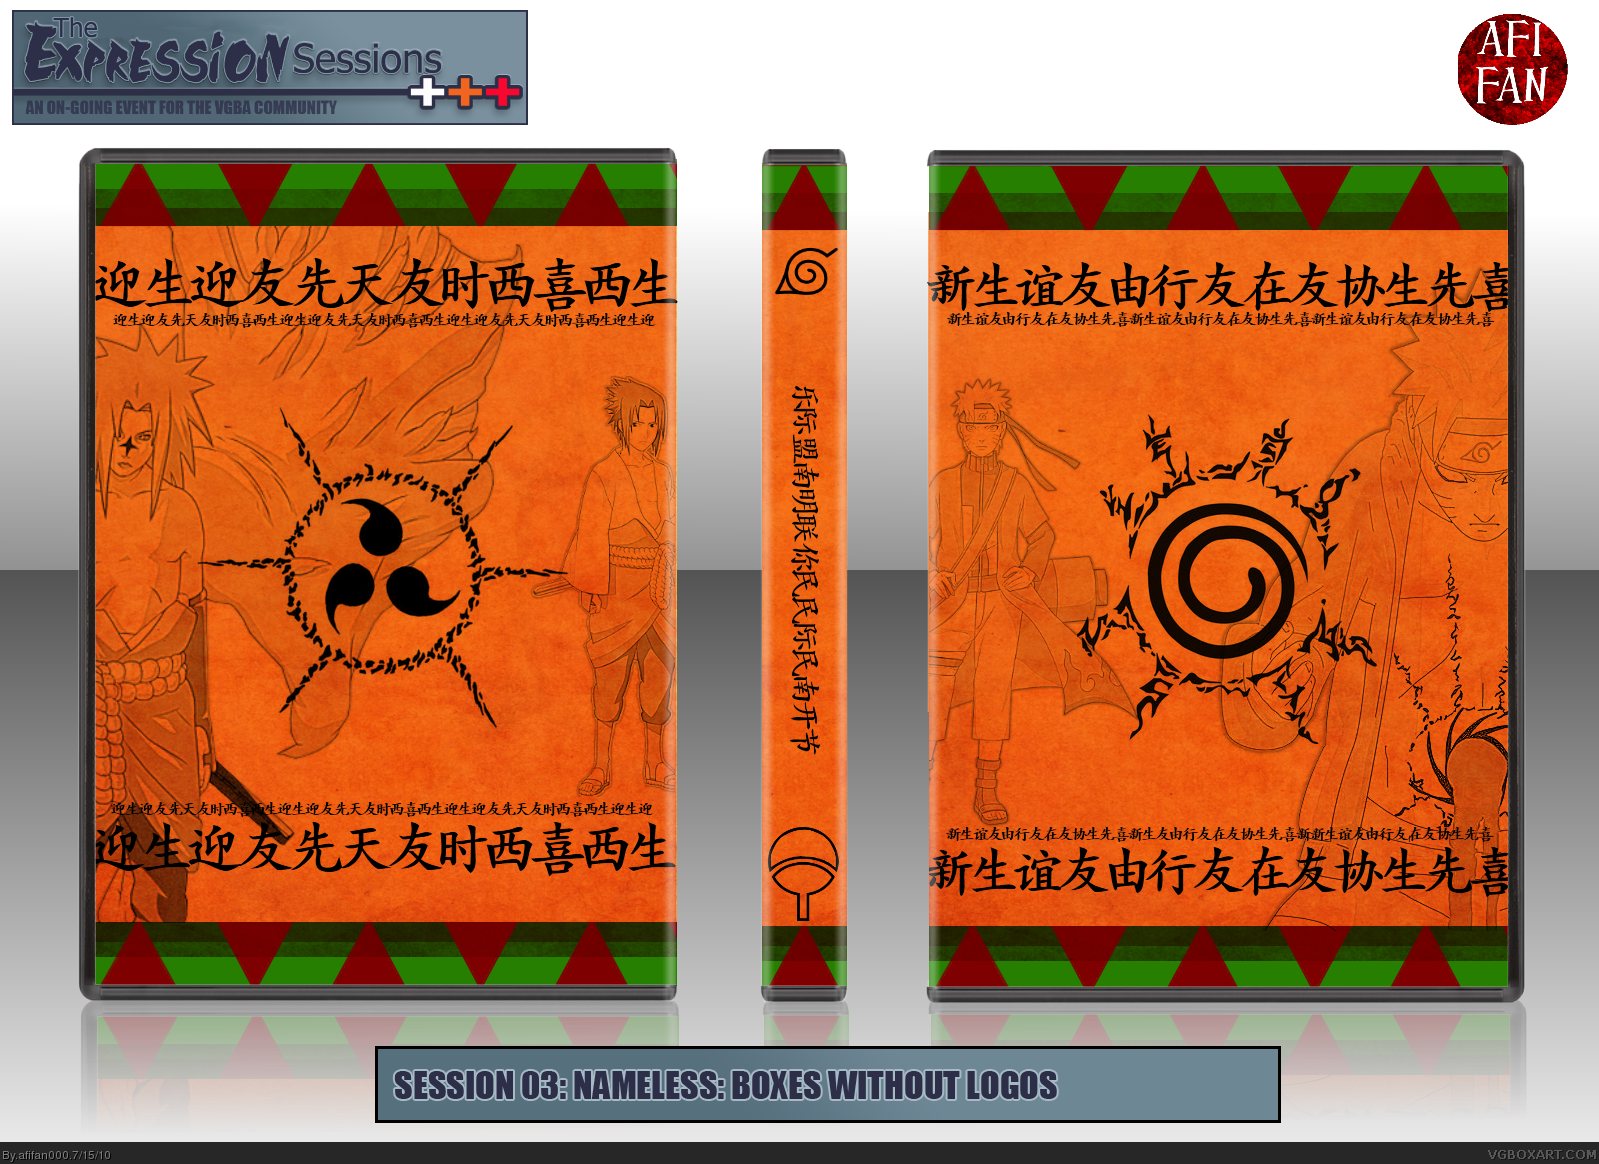 Naruto: Shippuden box cover